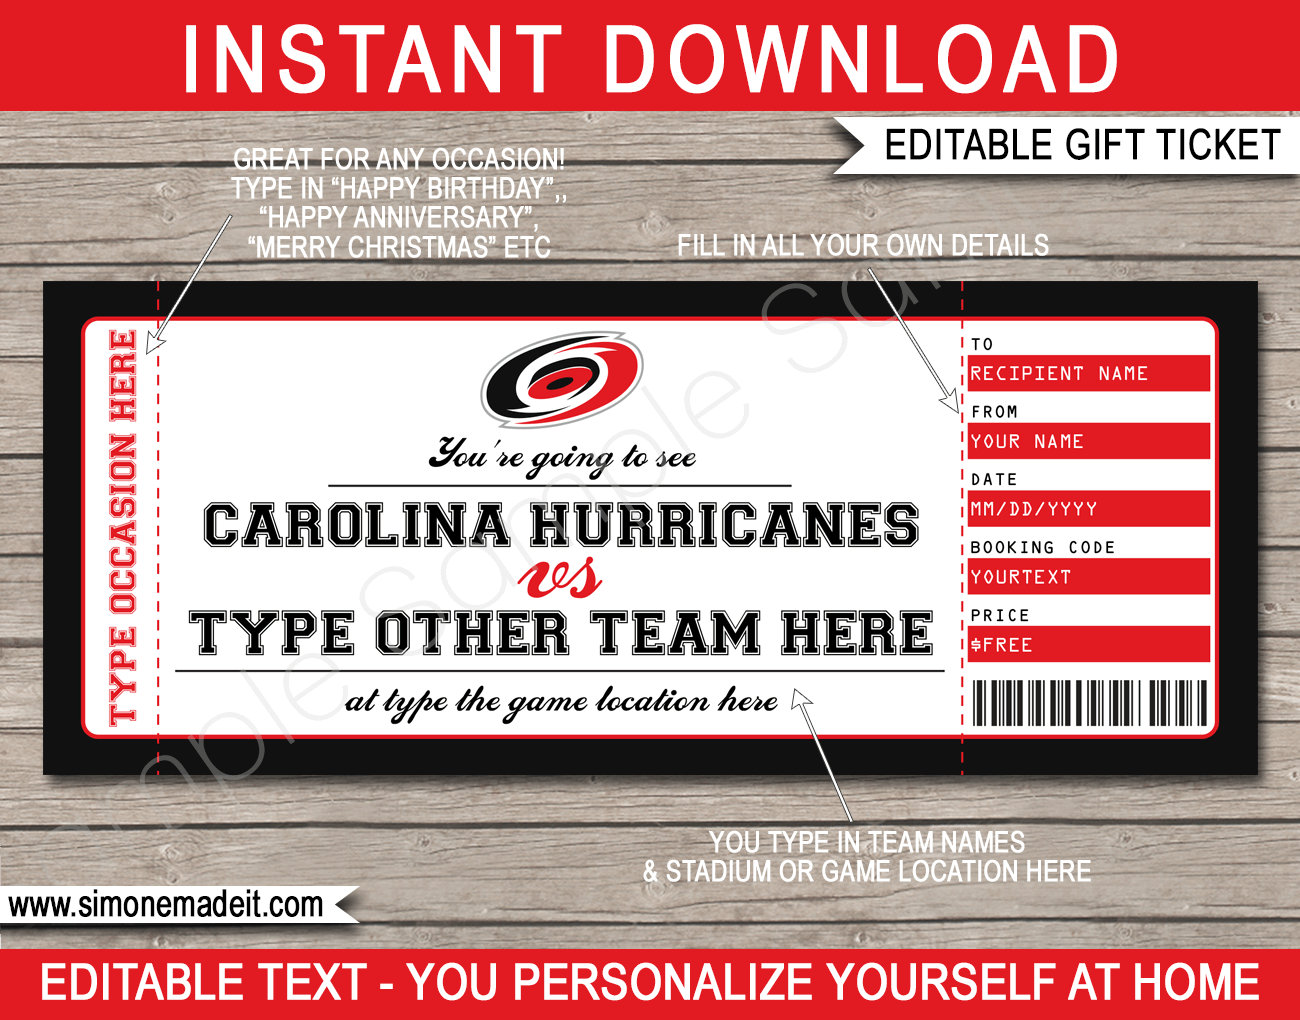 Buy Carolina Hurricanes Tickets Today